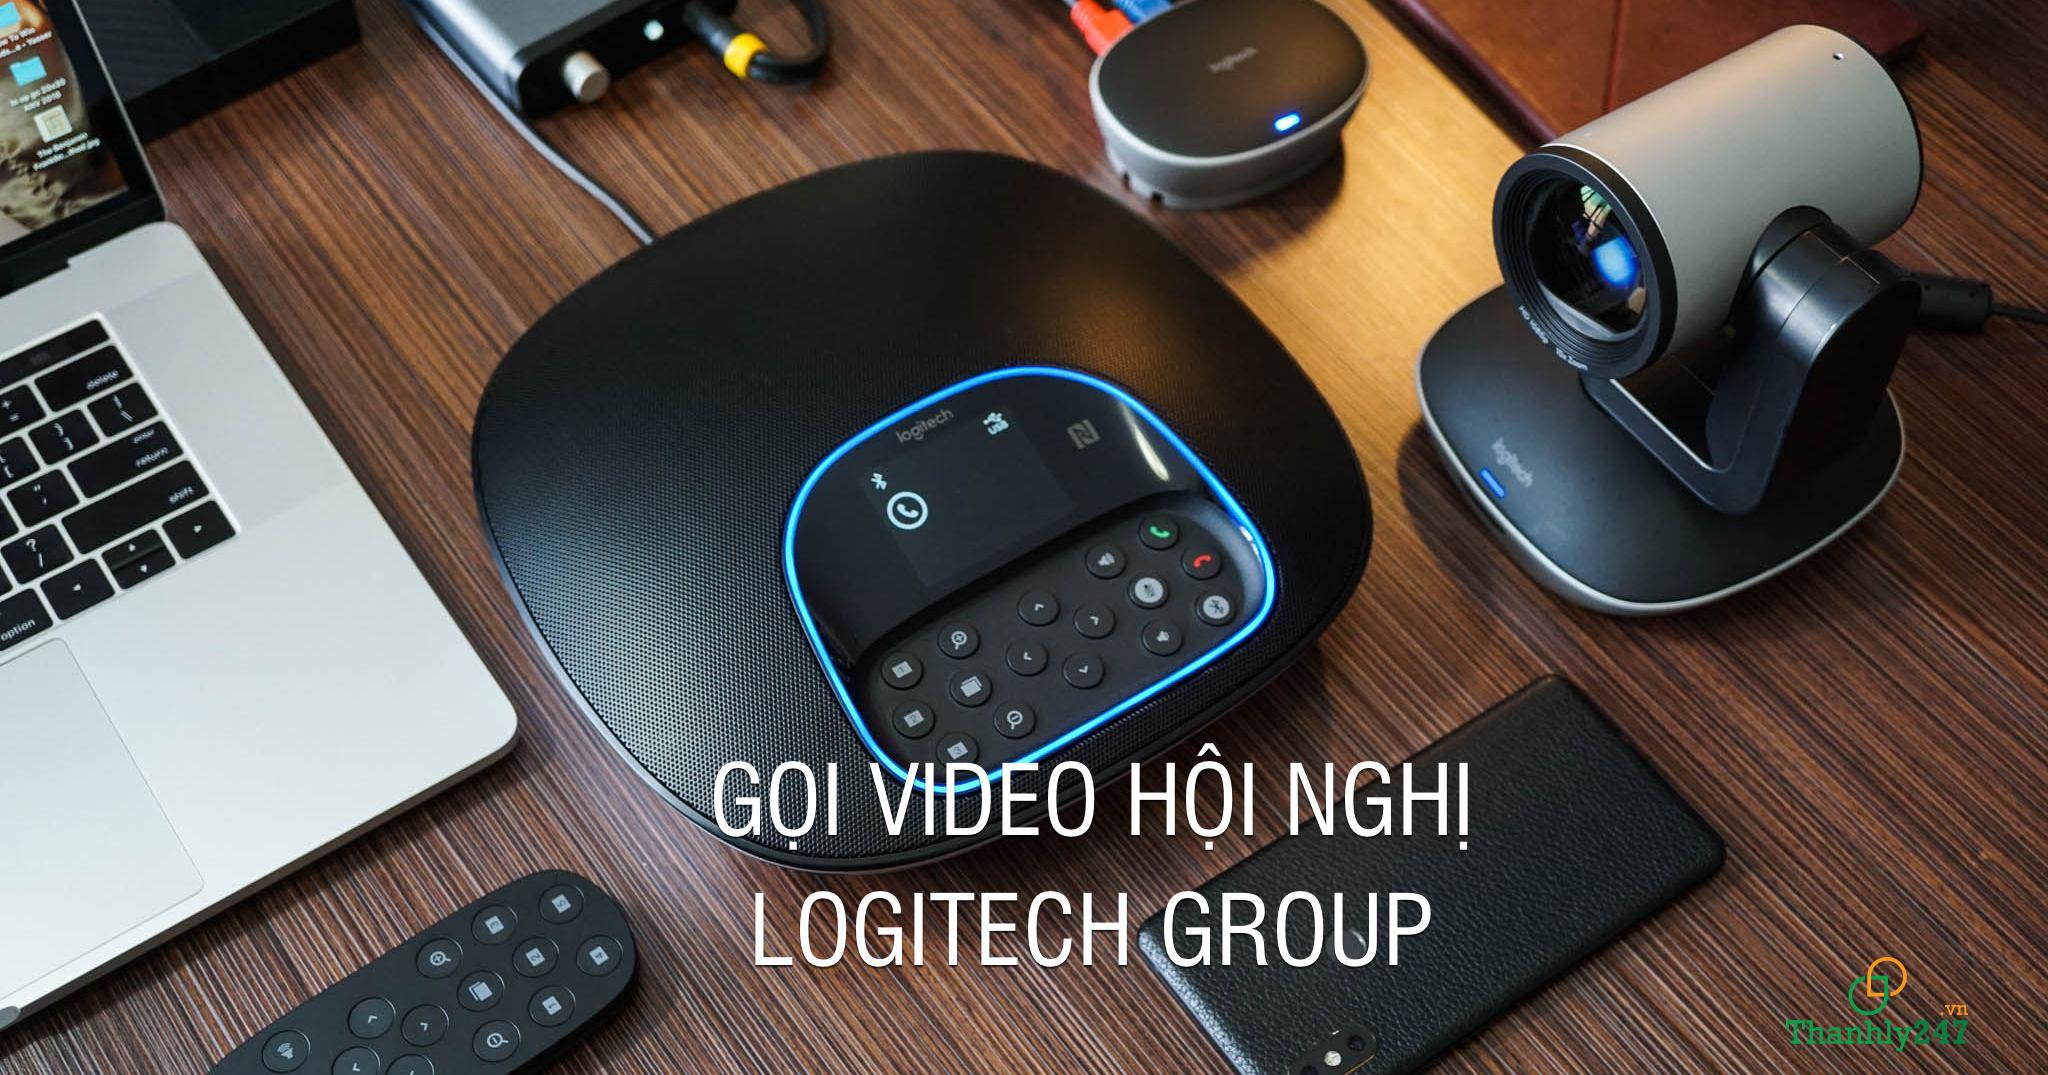 Review các thành phần của Logitech Group